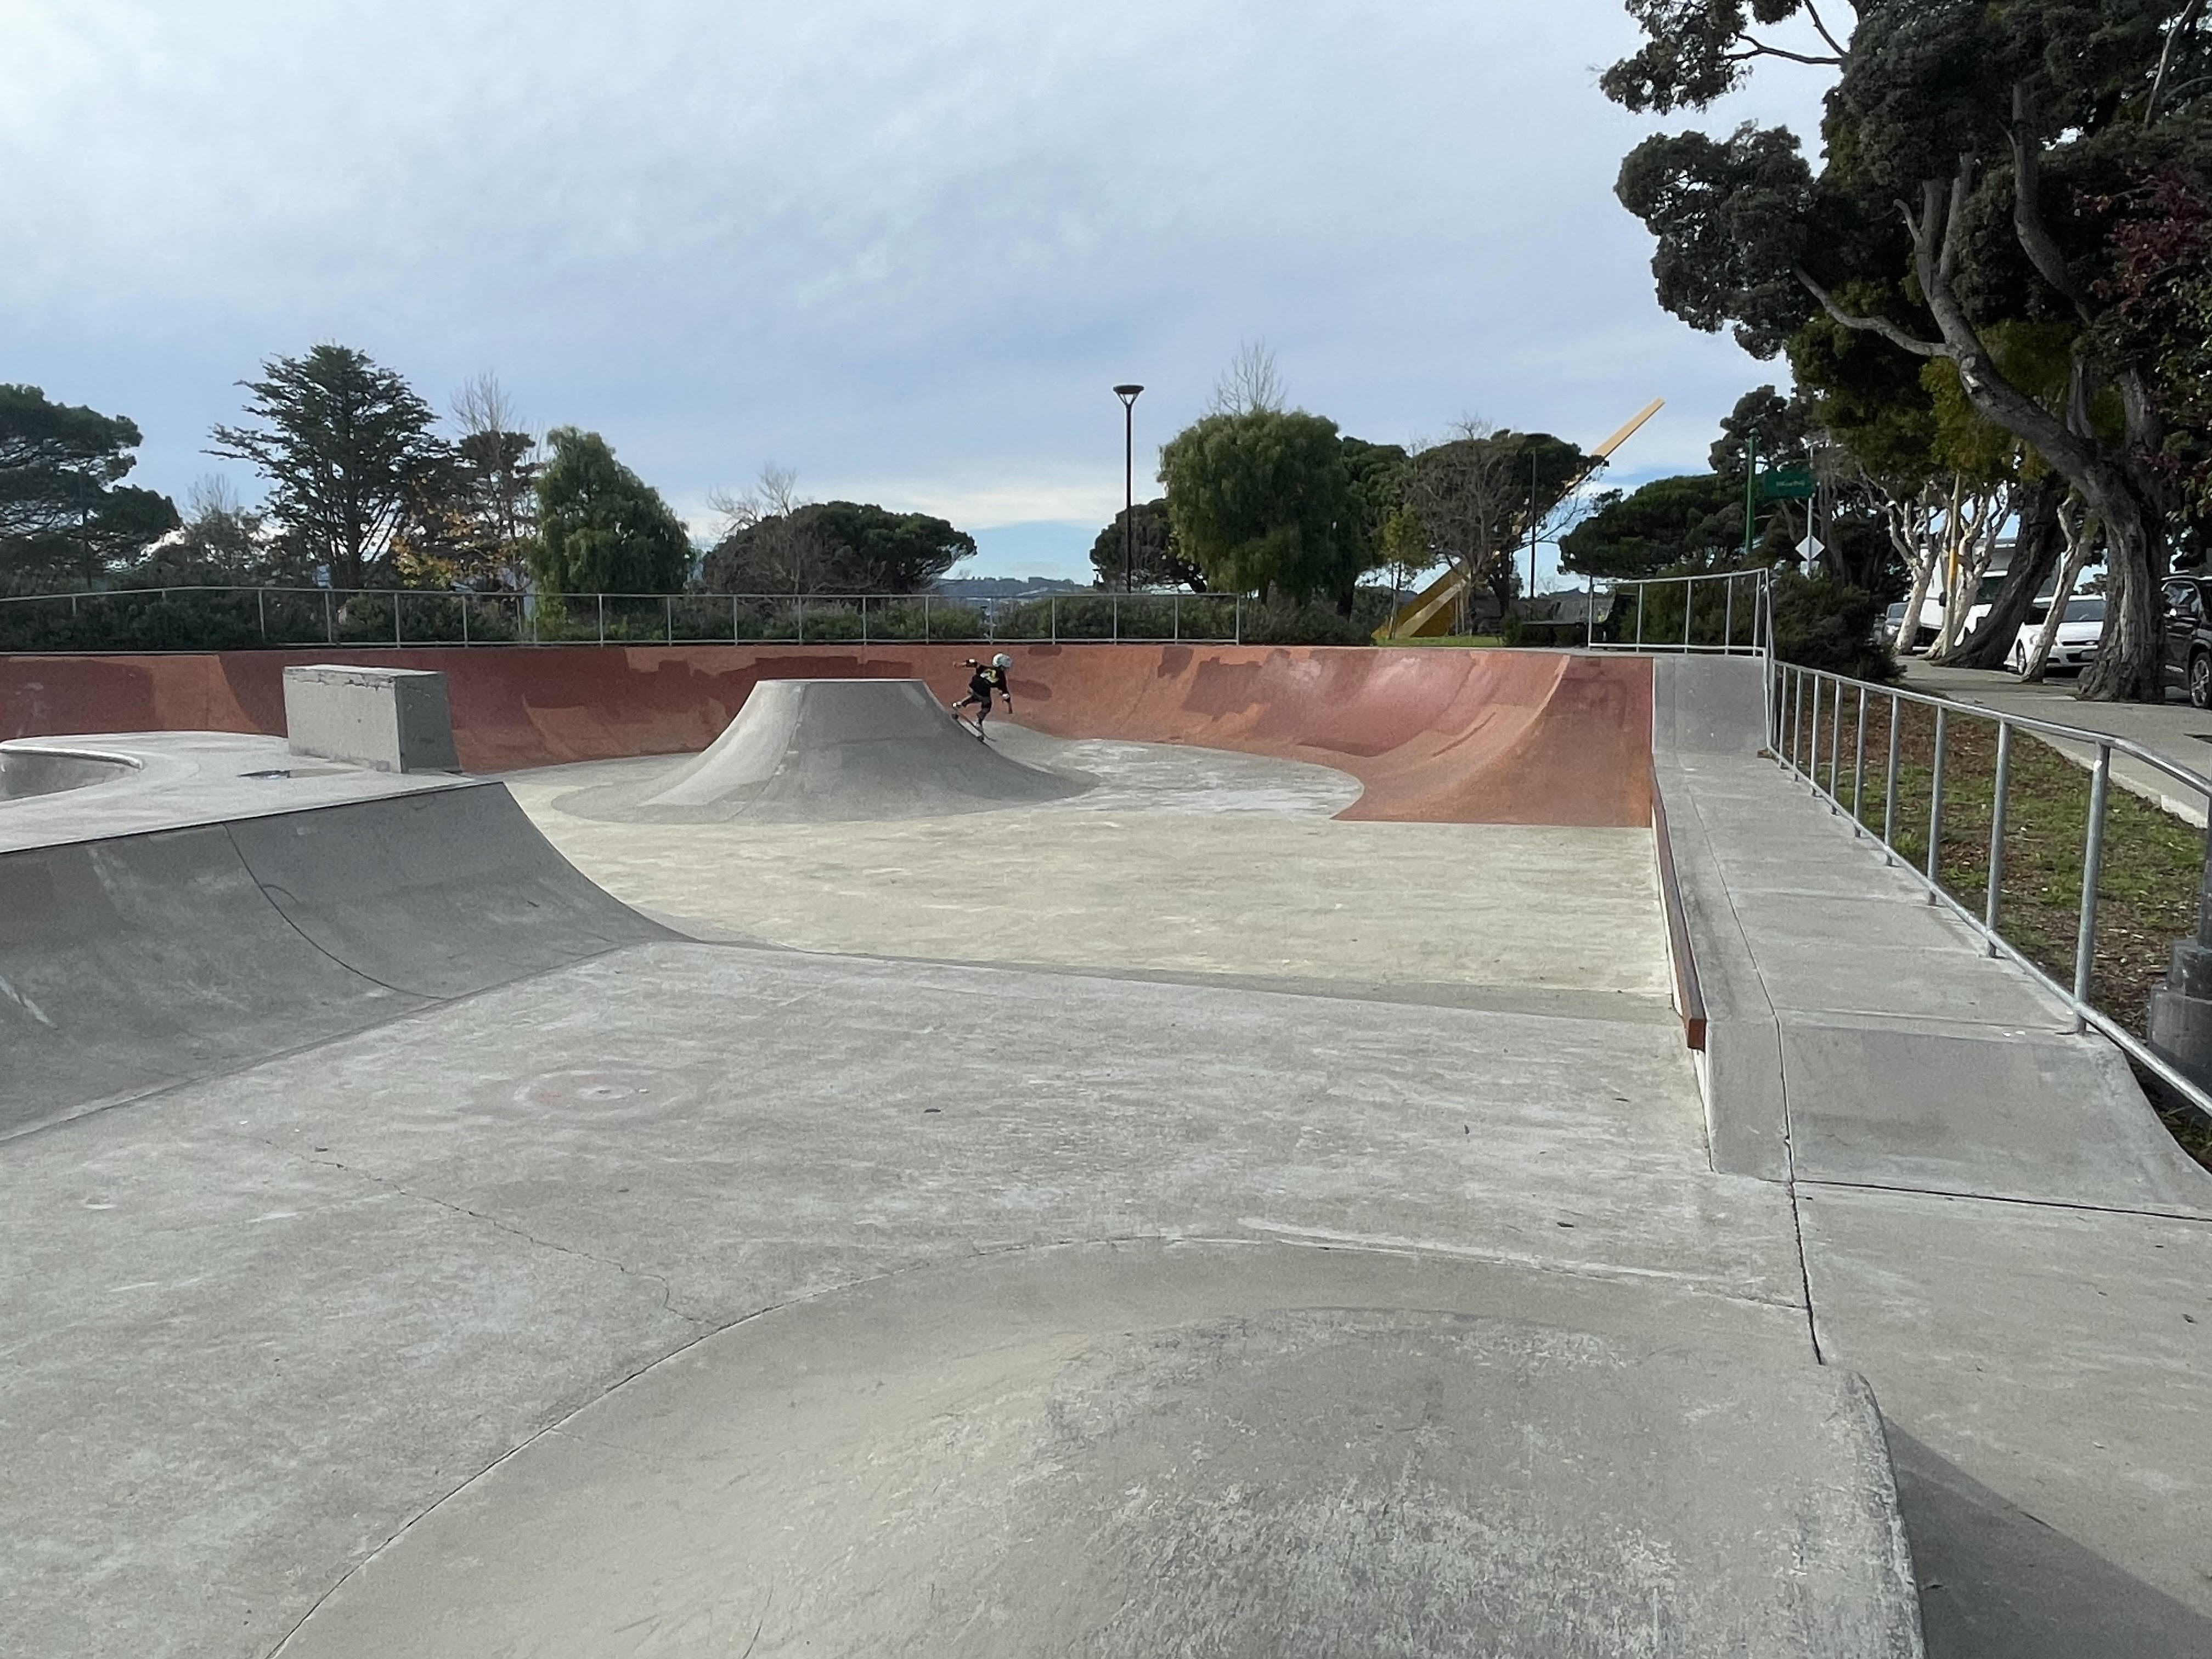 Hilltop skatepark